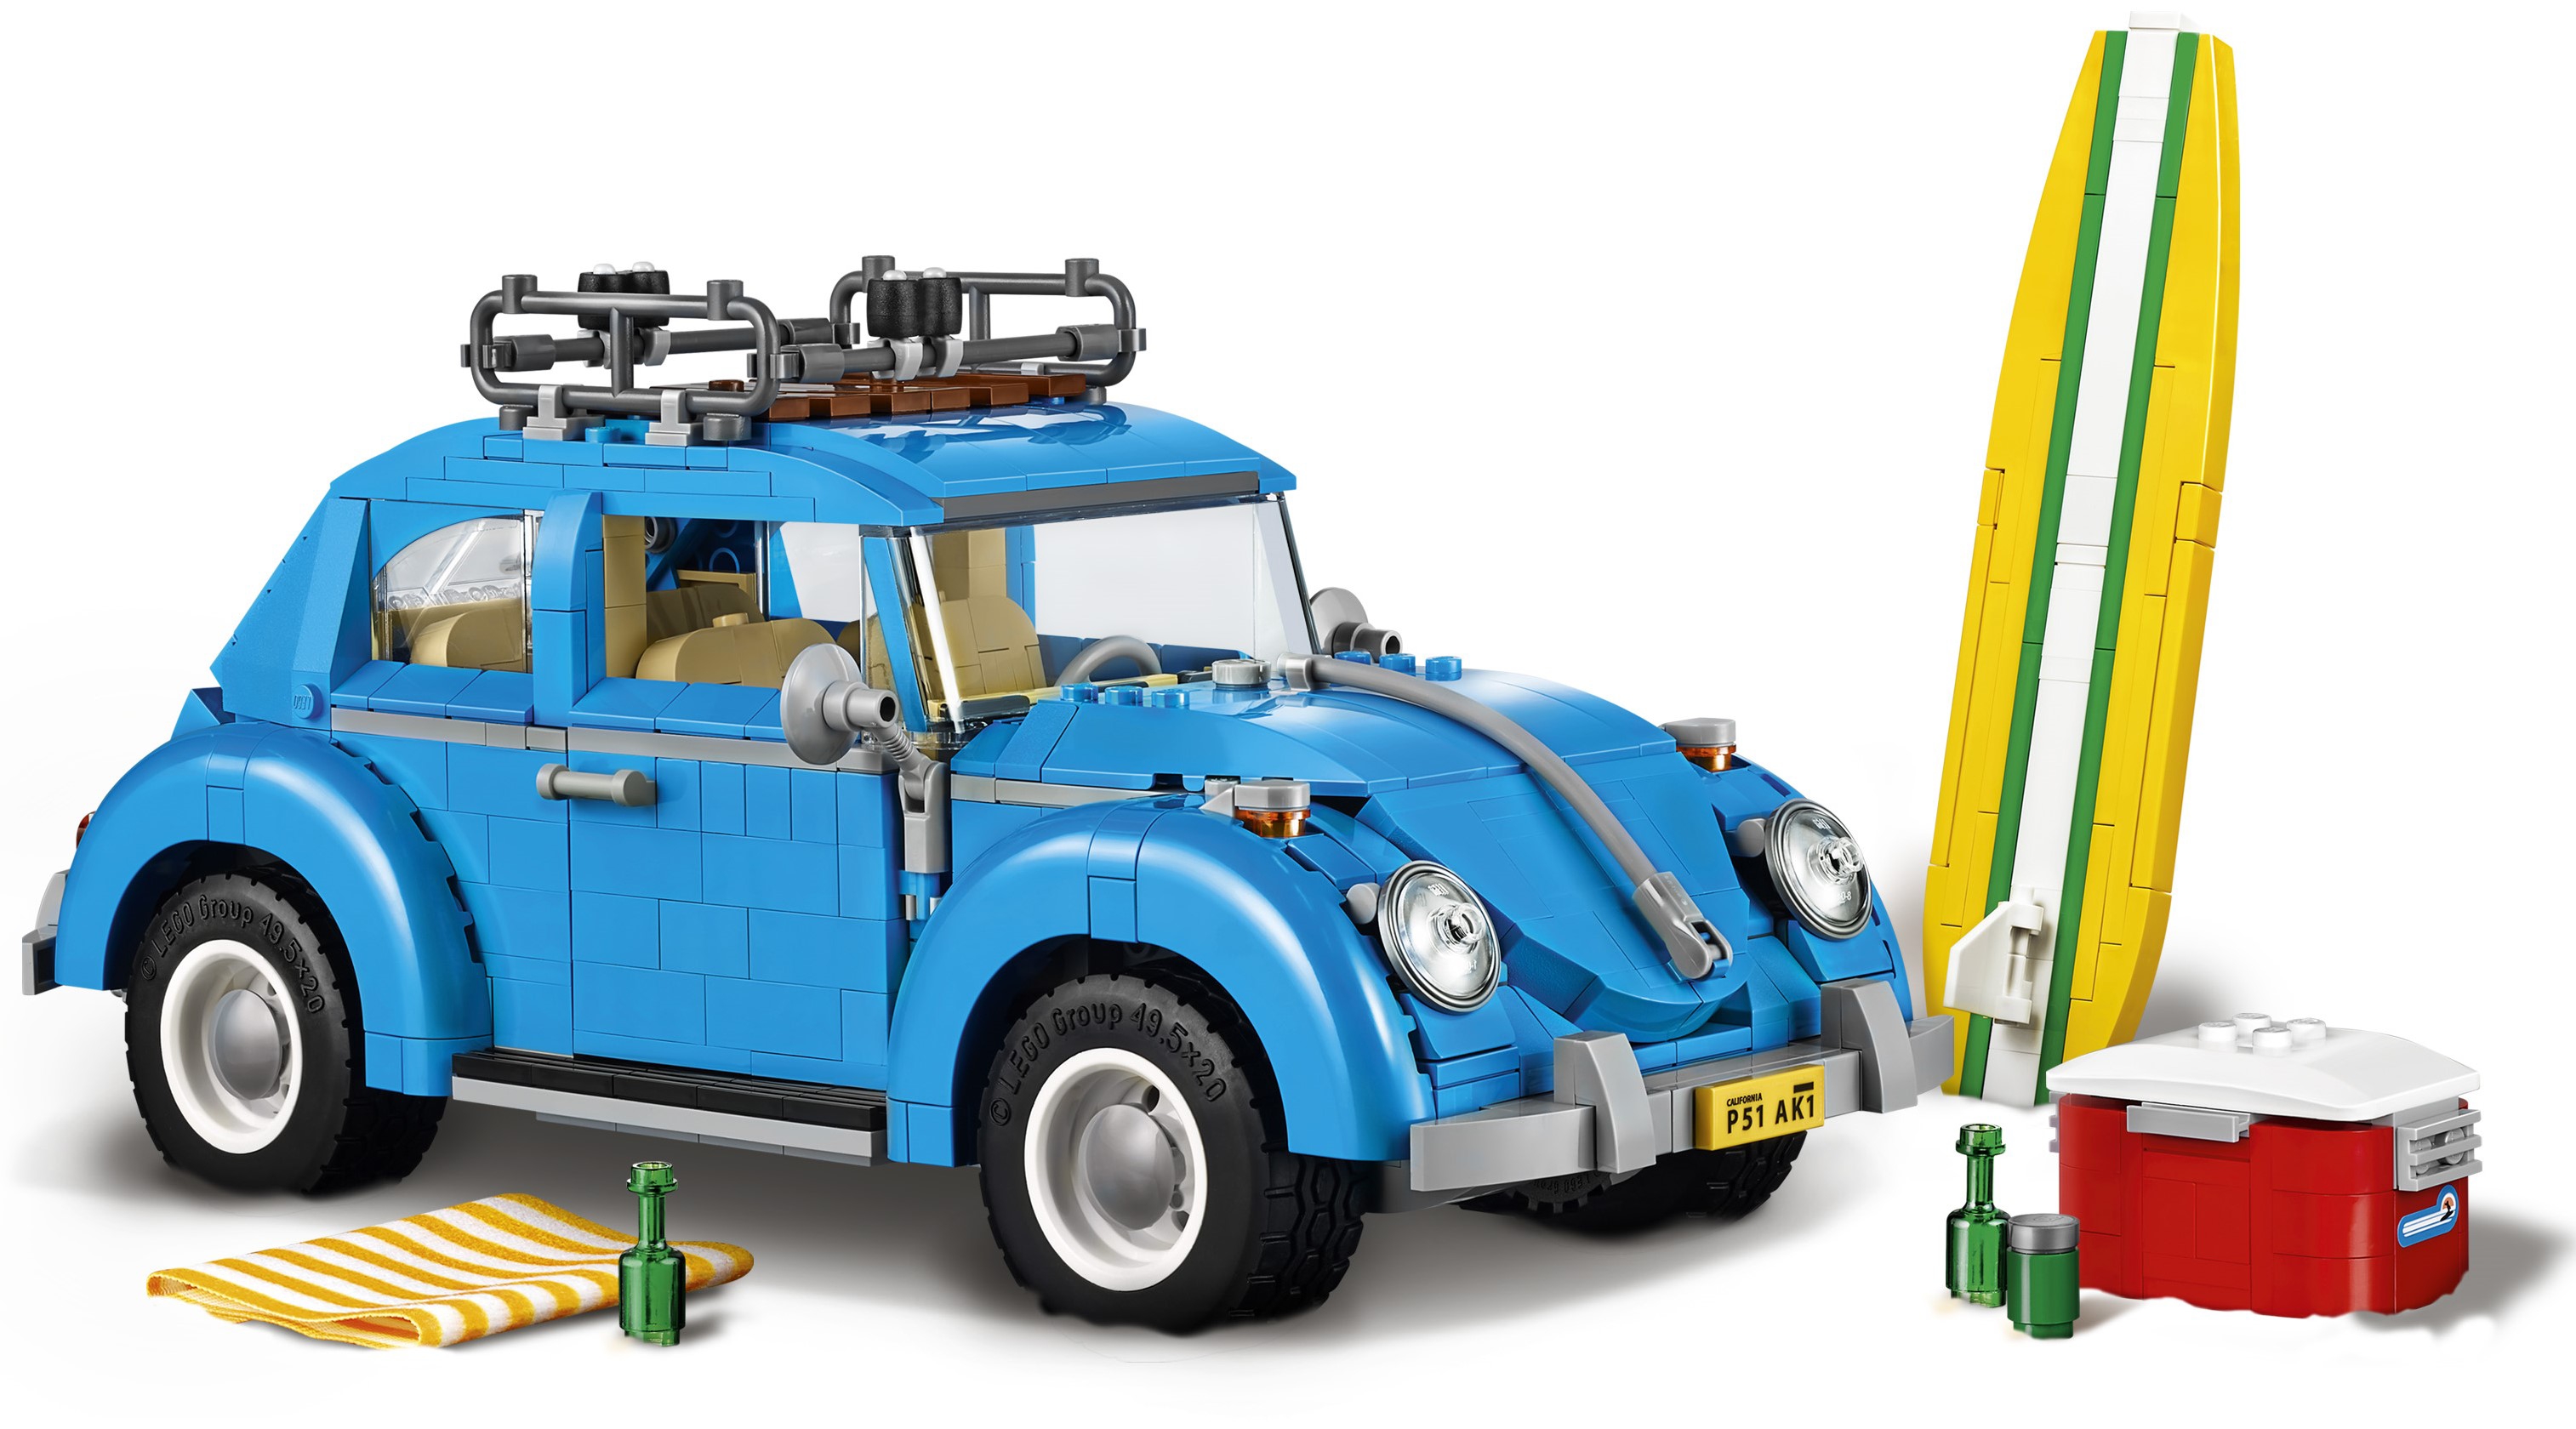 LEGO Volkswagen Beetle Creator Expert 10252 for sale online